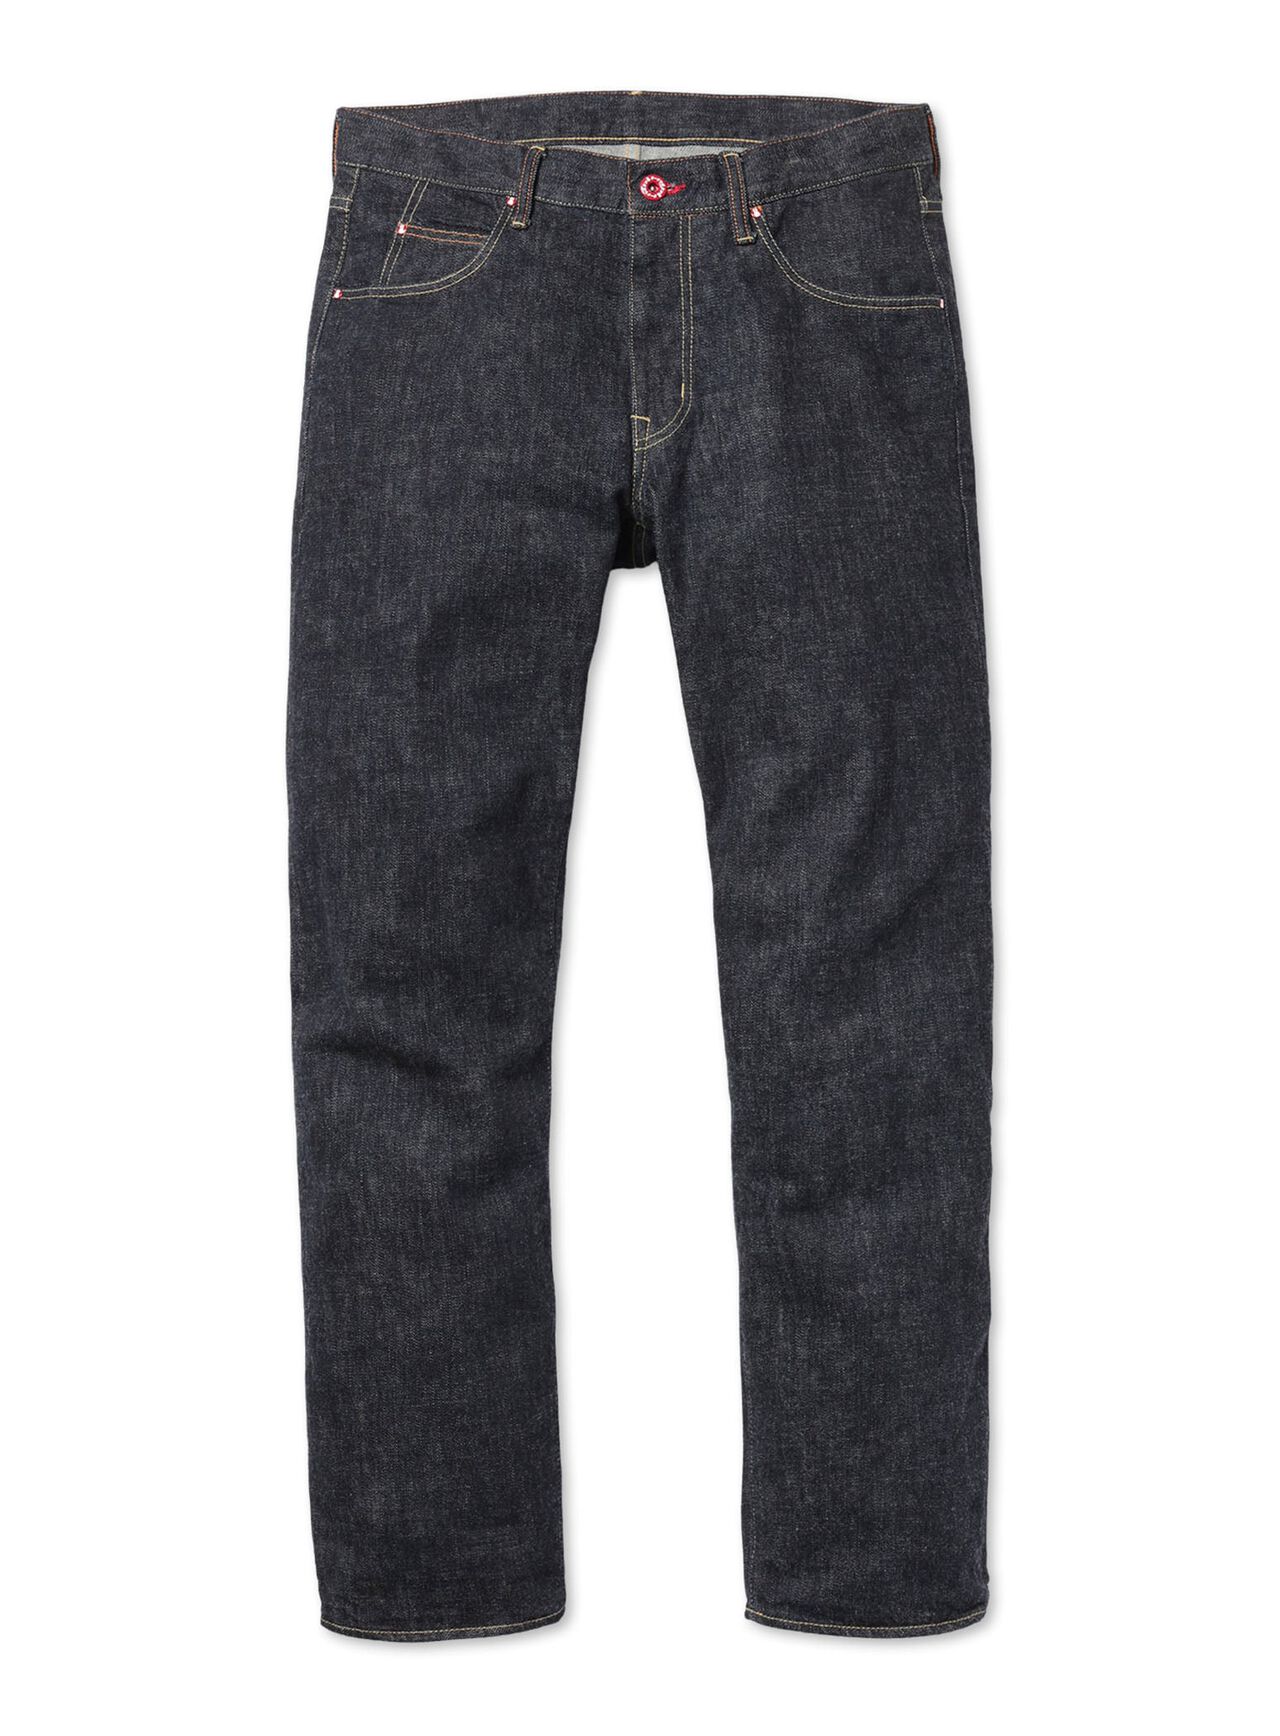 Jeans - Regular 22 - Reverse U5,, large image number 1